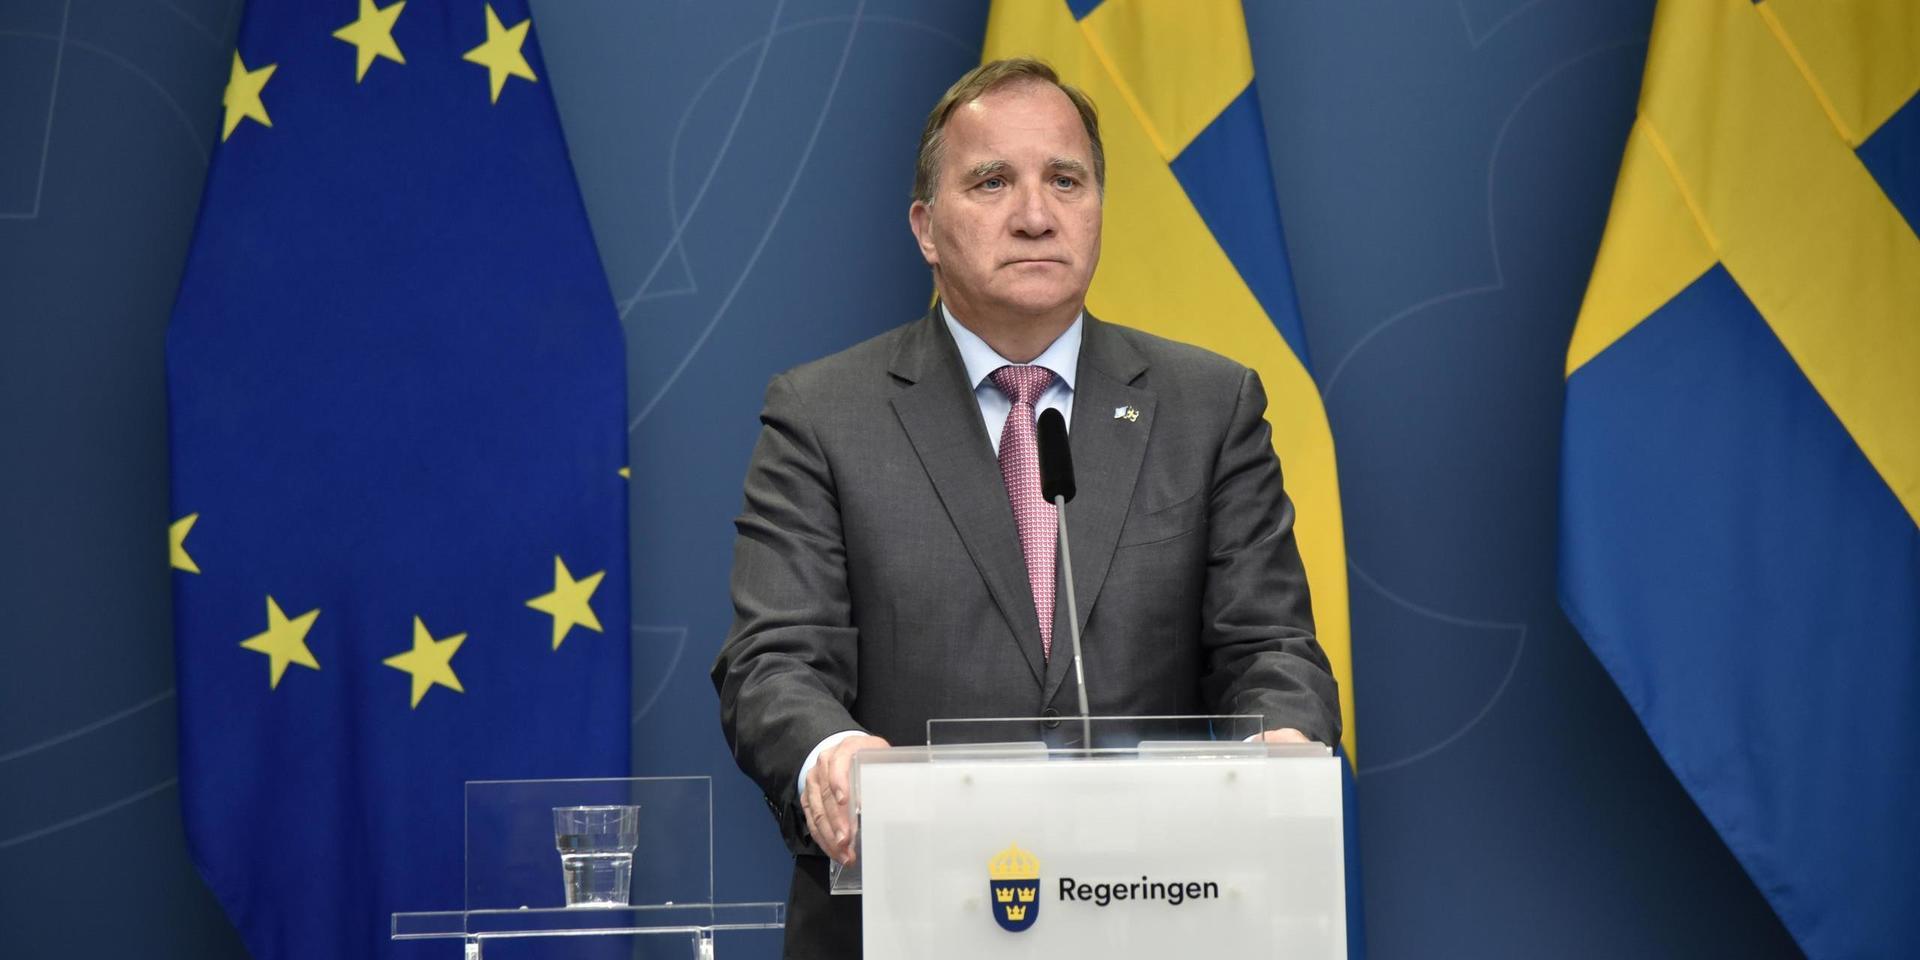 Statsminister Stefan Löfven (S) kan bli första statsministern att röstas bort i ett misstroende.